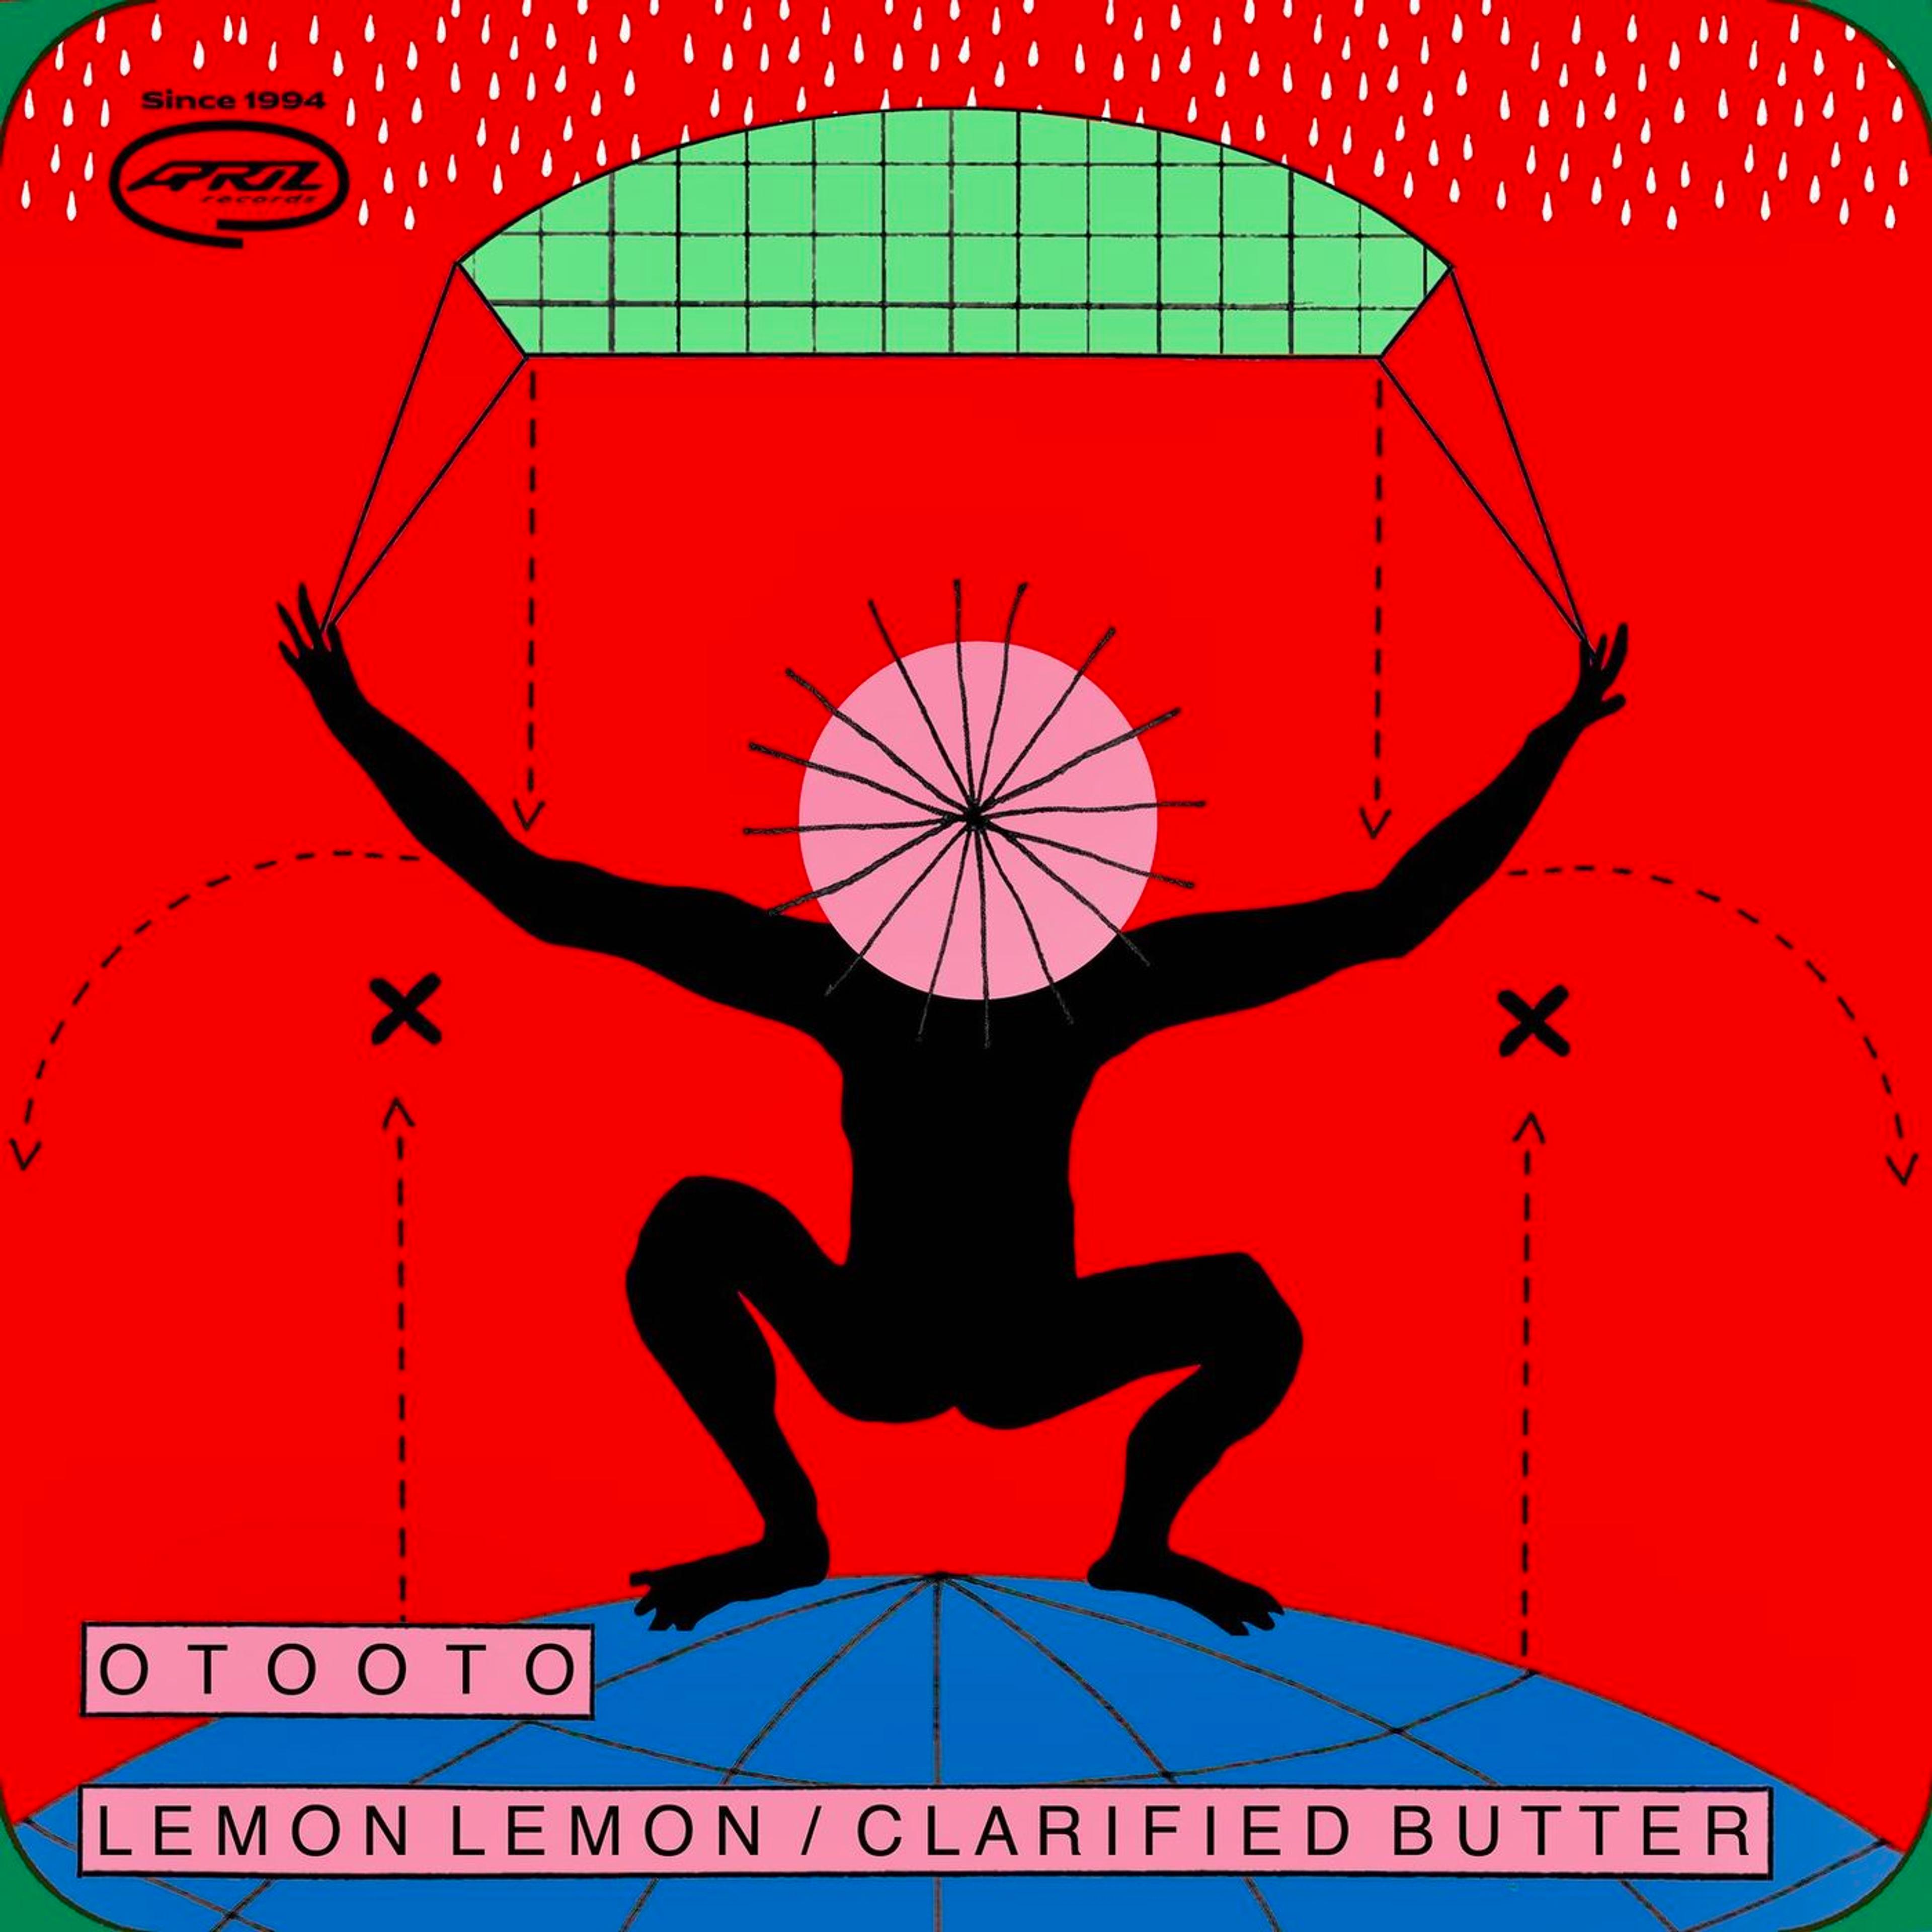 Artwork for Lemon Lemon / Clarified Butter by OTOOTO